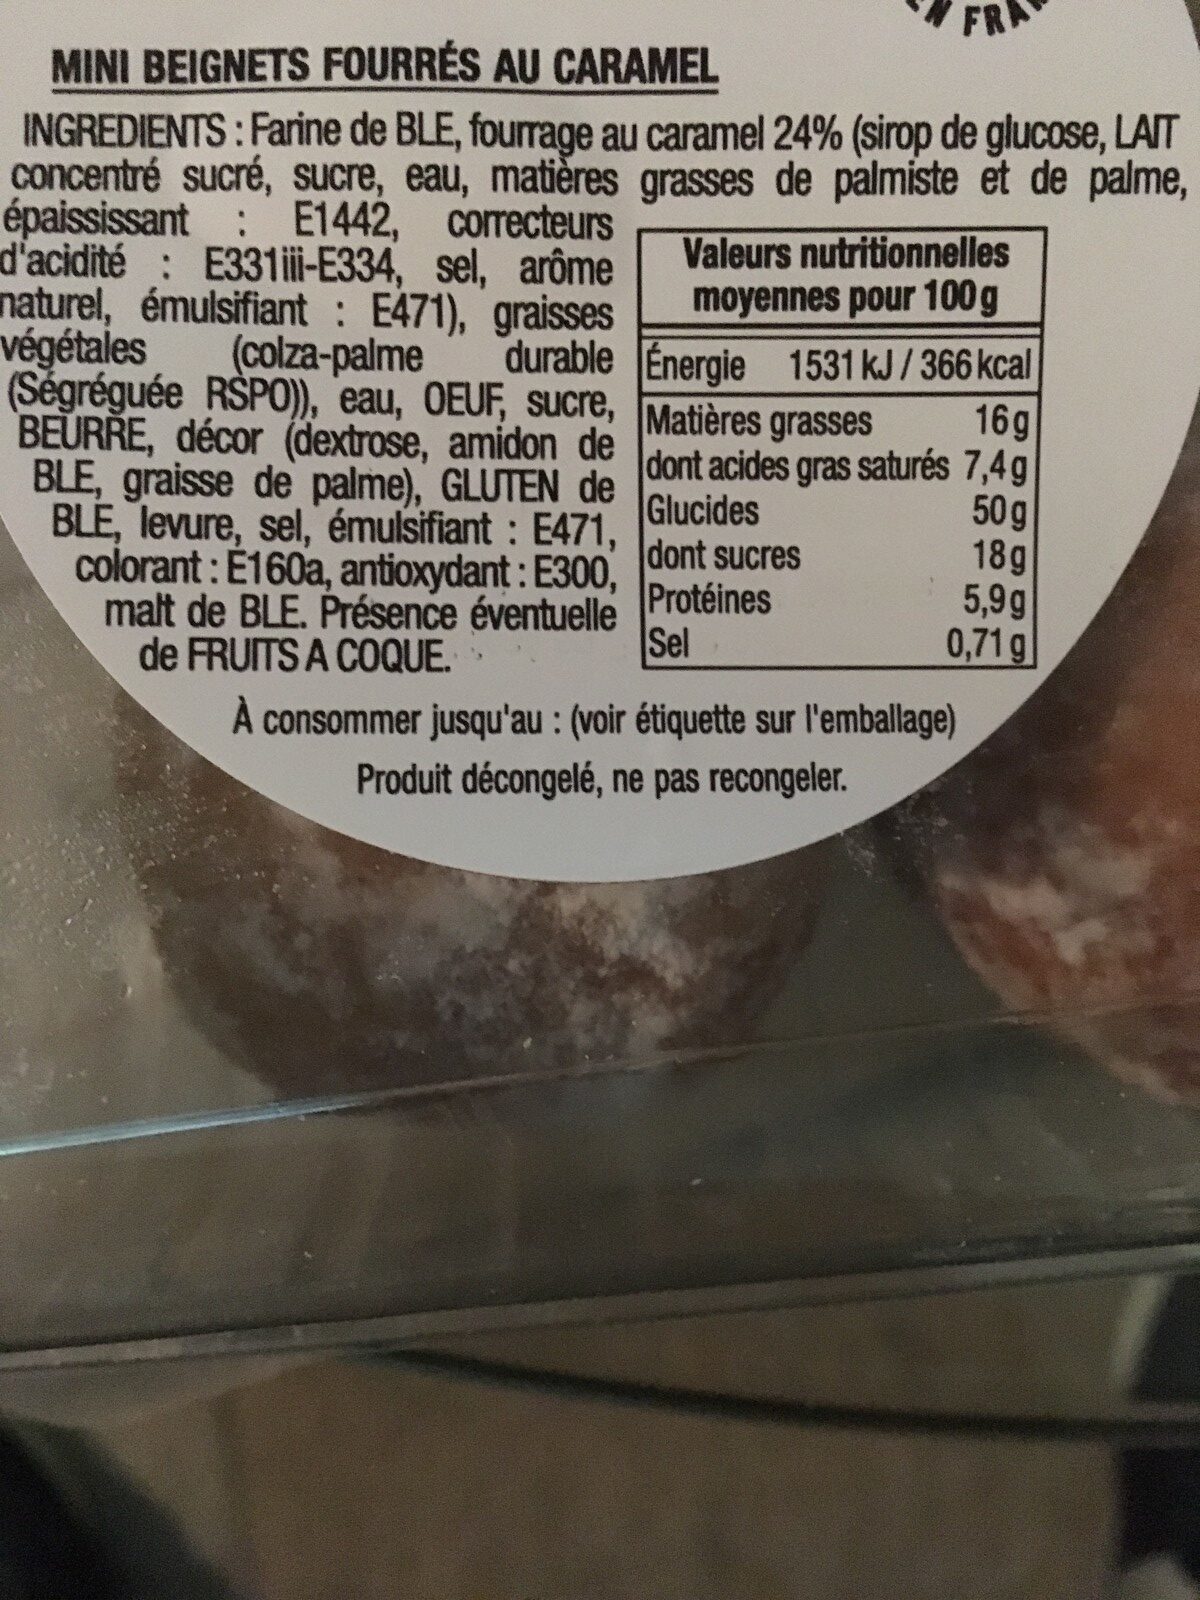 Mini beignets fourrés - Ingrédients